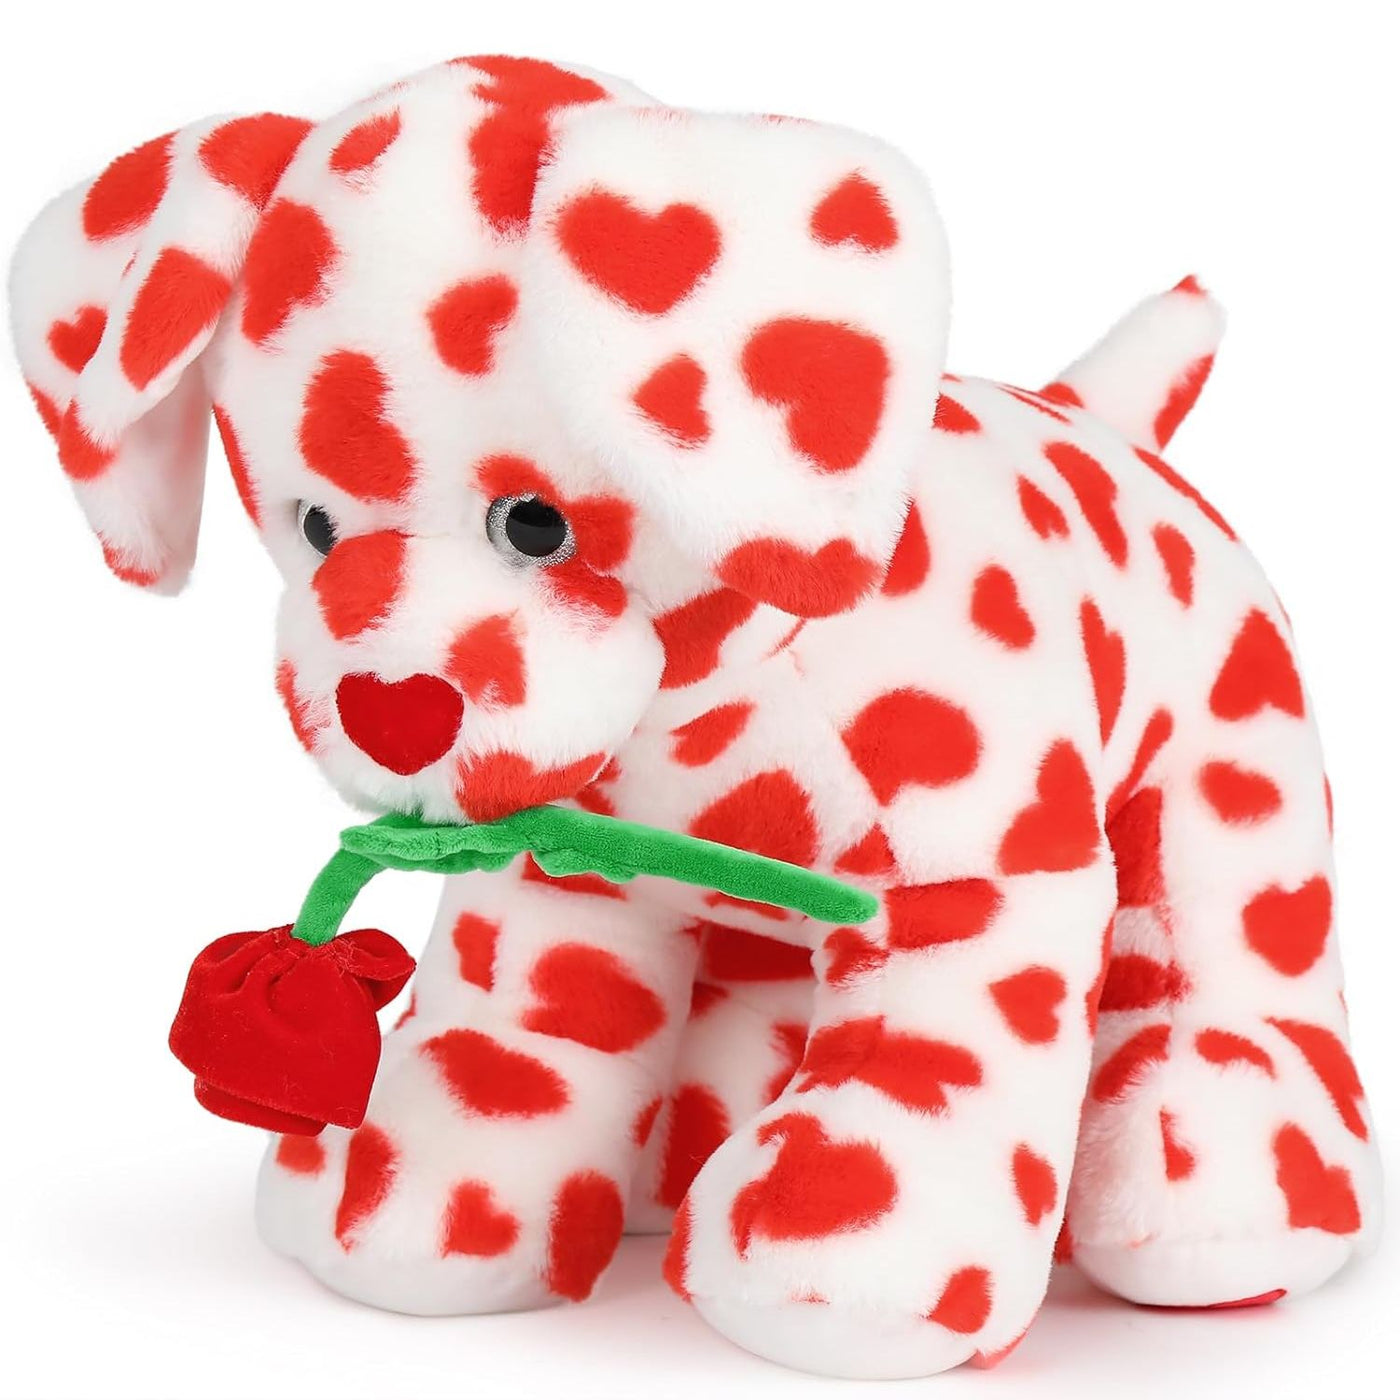 Valentine's Day Dog Stuffed Toy, 18 Inches - MorisMos Valentine's Day Plush Toys